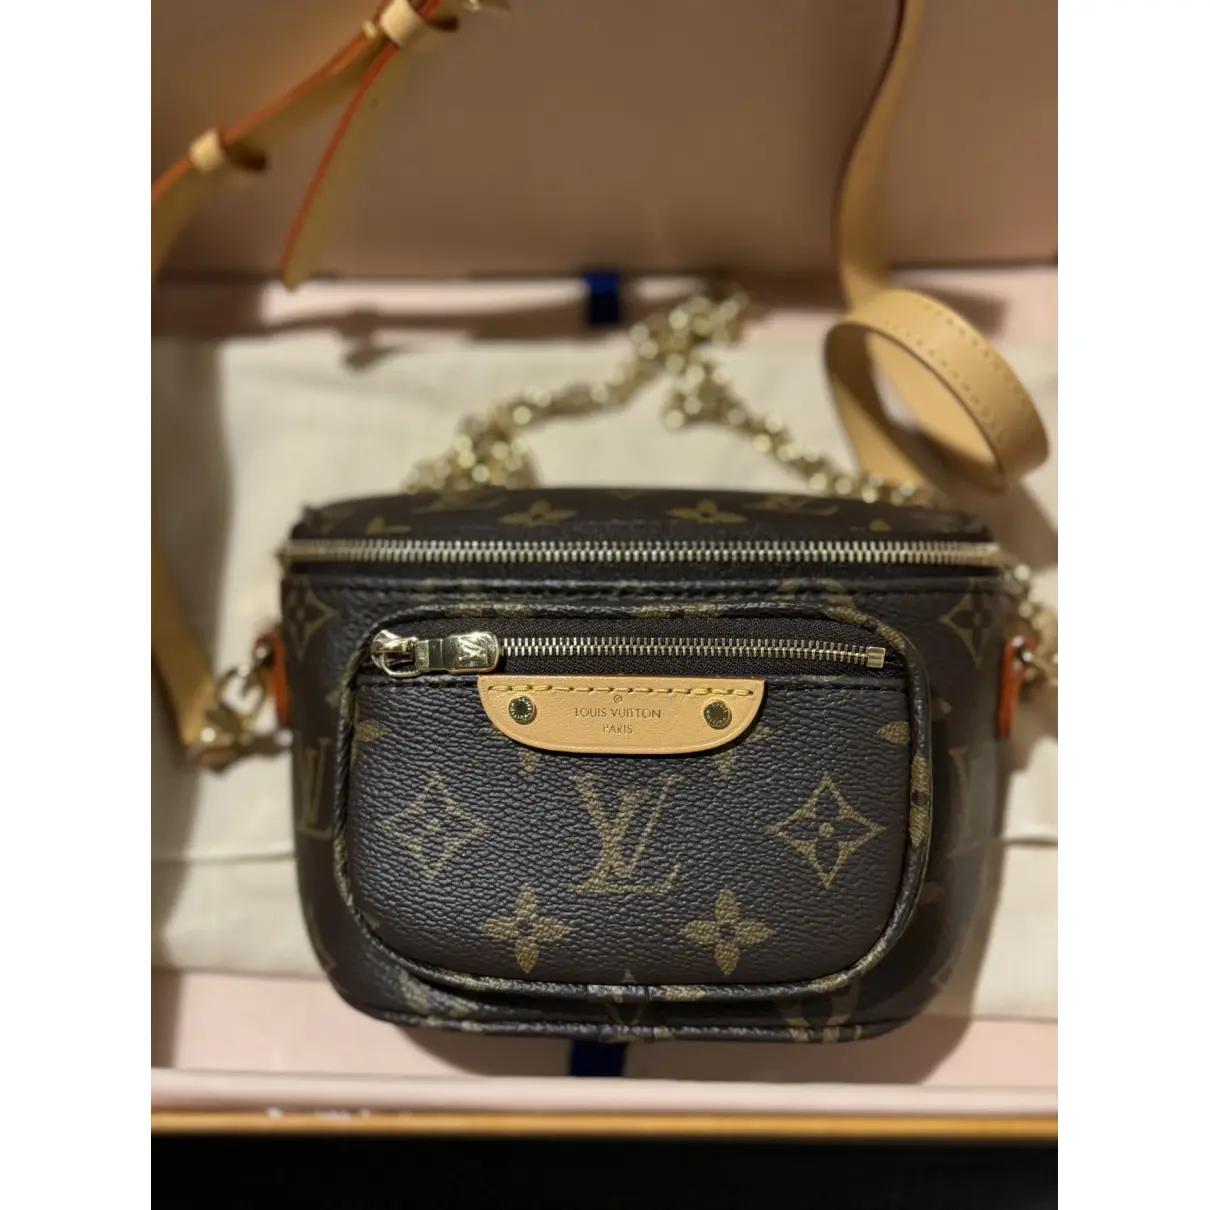 Buy Louis Vuitton Bum Bag / Sac Ceinture leather mini bag online